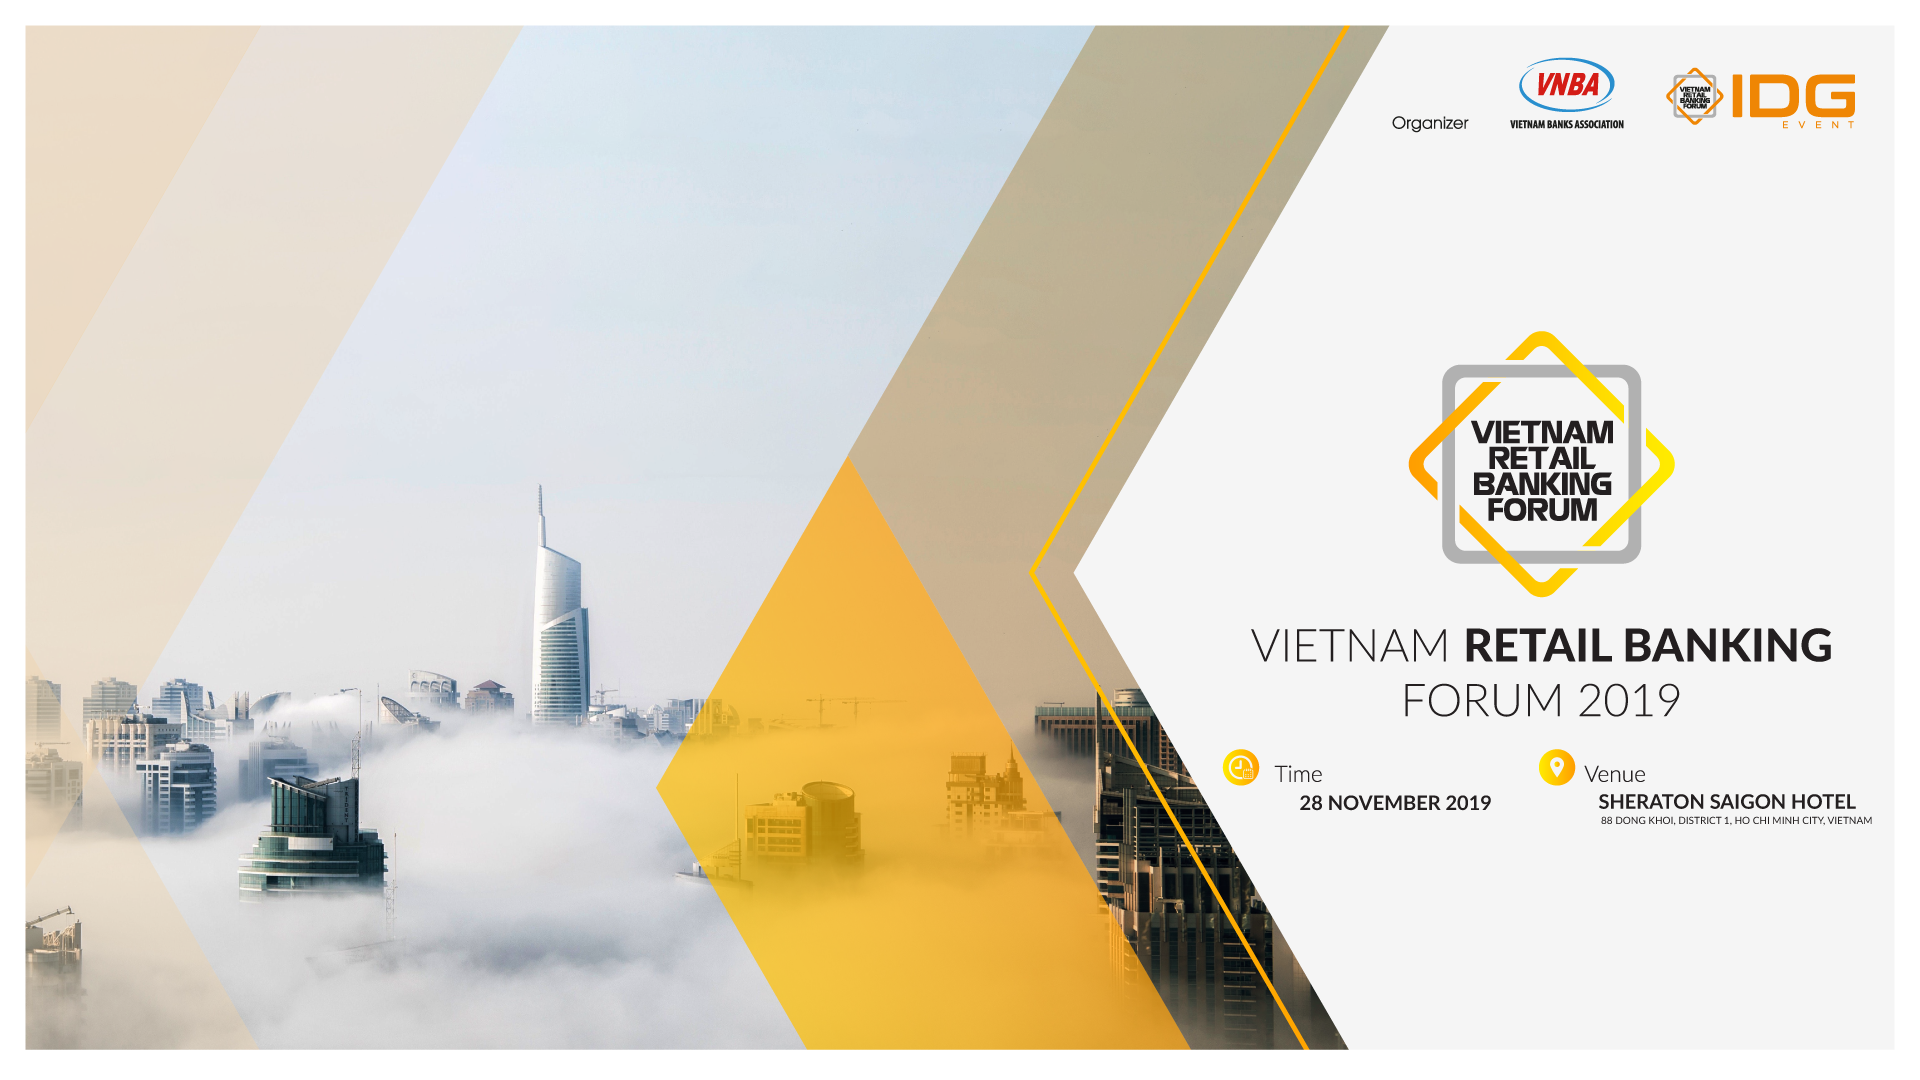 Diễn đàn Ngân hàng Bán lẻ 2019 tổ chức ngày 28112019 tại Thành phố Hồ Chí Minh